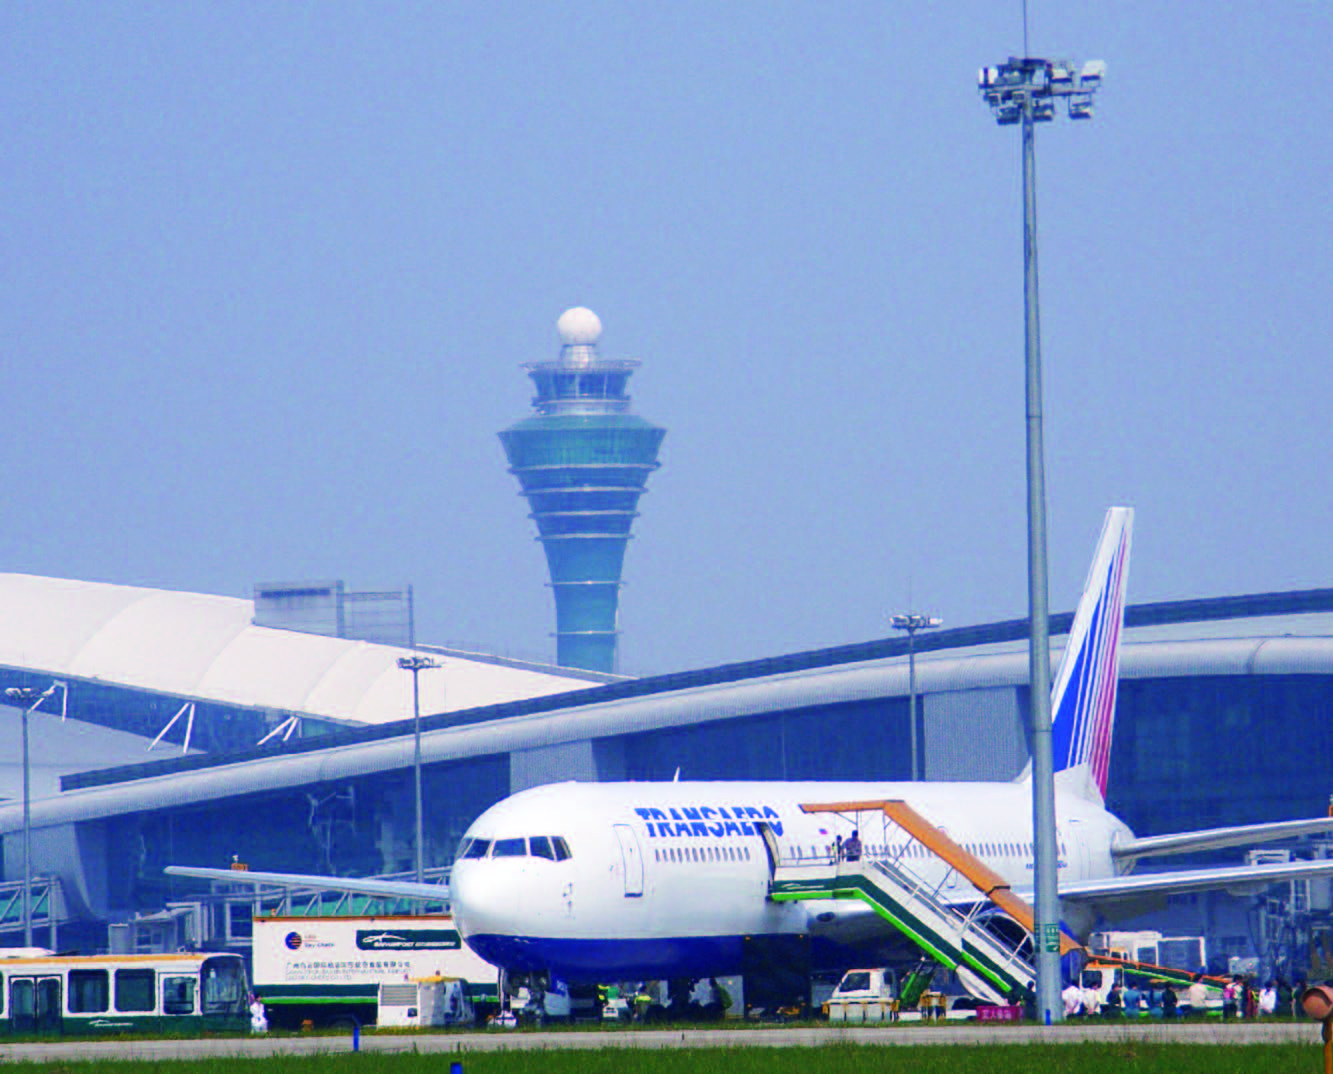 Новый международный аэропорт Байюнь